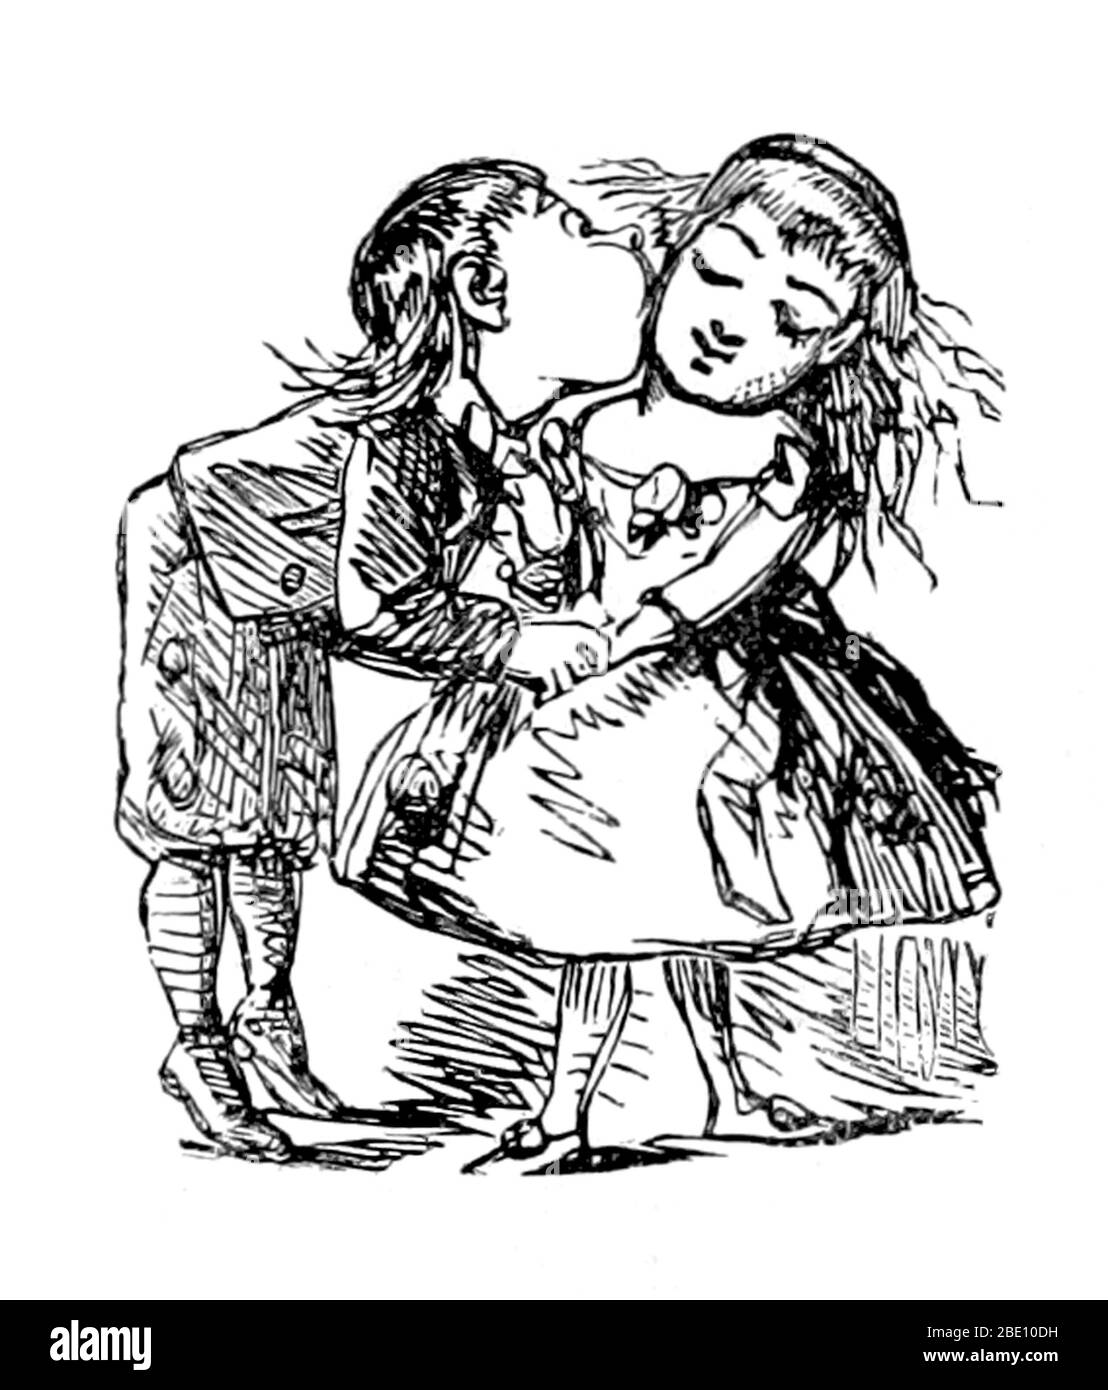 La Saint Valentin, également connue sous le nom de Saint Valentin ou de Saint Valentin, est une fête observée le 14 février chaque année. Il est célébré dans de nombreux pays du monde entier, bien que ce ne soit pas un jour férié dans la plupart d'entre eux. La journée a été d'abord associée à l'amour romantique en Europe médiévale, lorsque la tradition de l'amour courtilement prospérait. Au XVIIIe siècle, l'Angleterre a évolué en une occasion où les amoureux ont exprimé leur amour les uns pour les autres en présentant des fleurs, en offrant des confiseries et en envoyant des cartes de vœux. Les symboles de la Saint-Valentin utilisés aujourd'hui comprennent la forme du cœur Banque D'Images